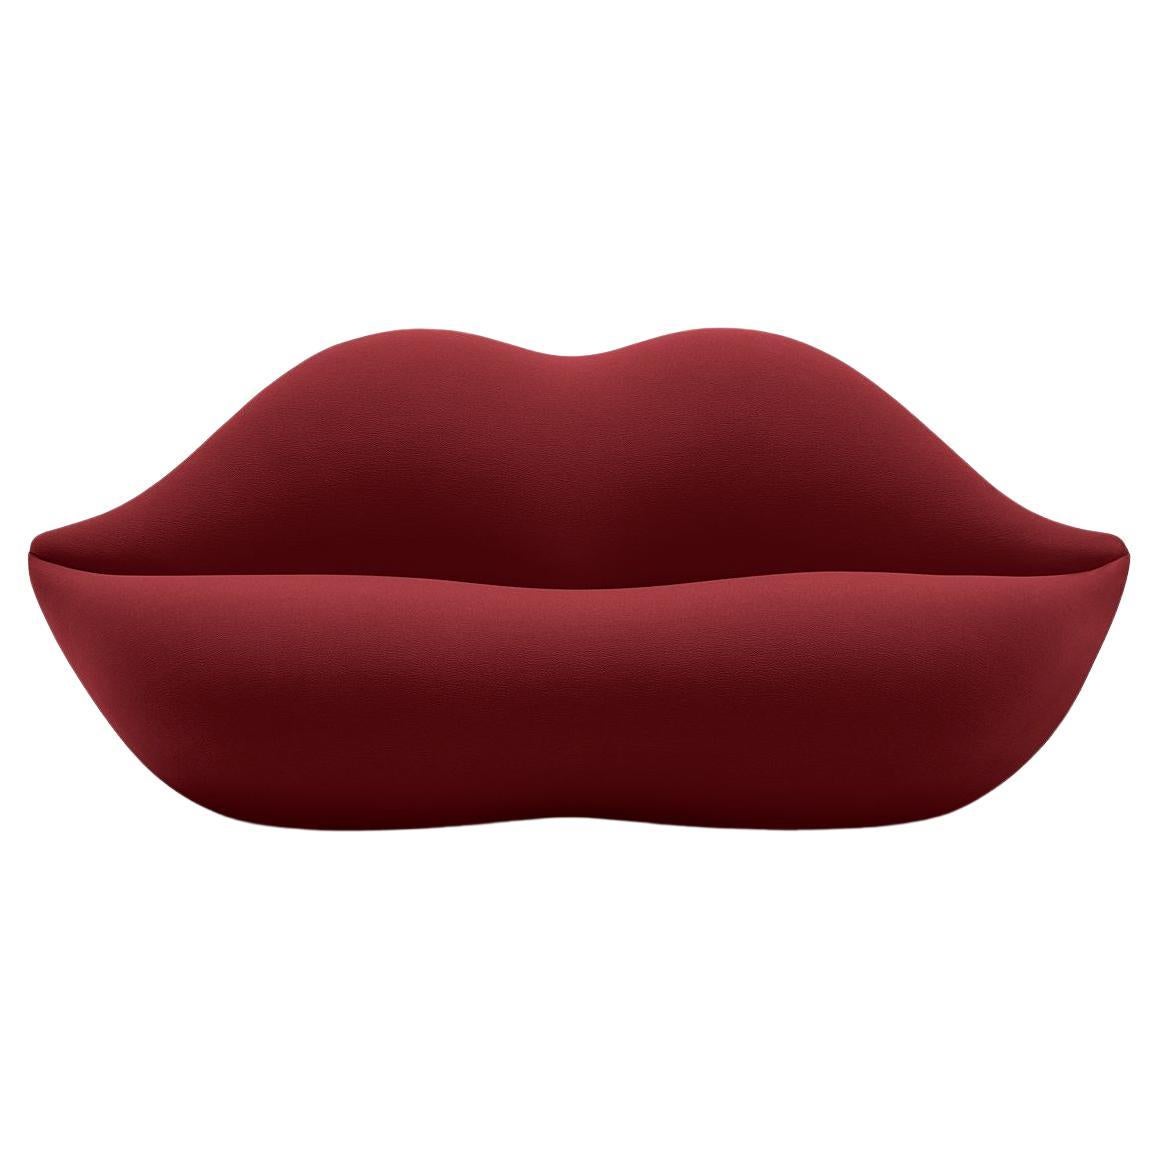 Gufram, canapé Bocca en forme de lèvre, cerisier, Studio 65